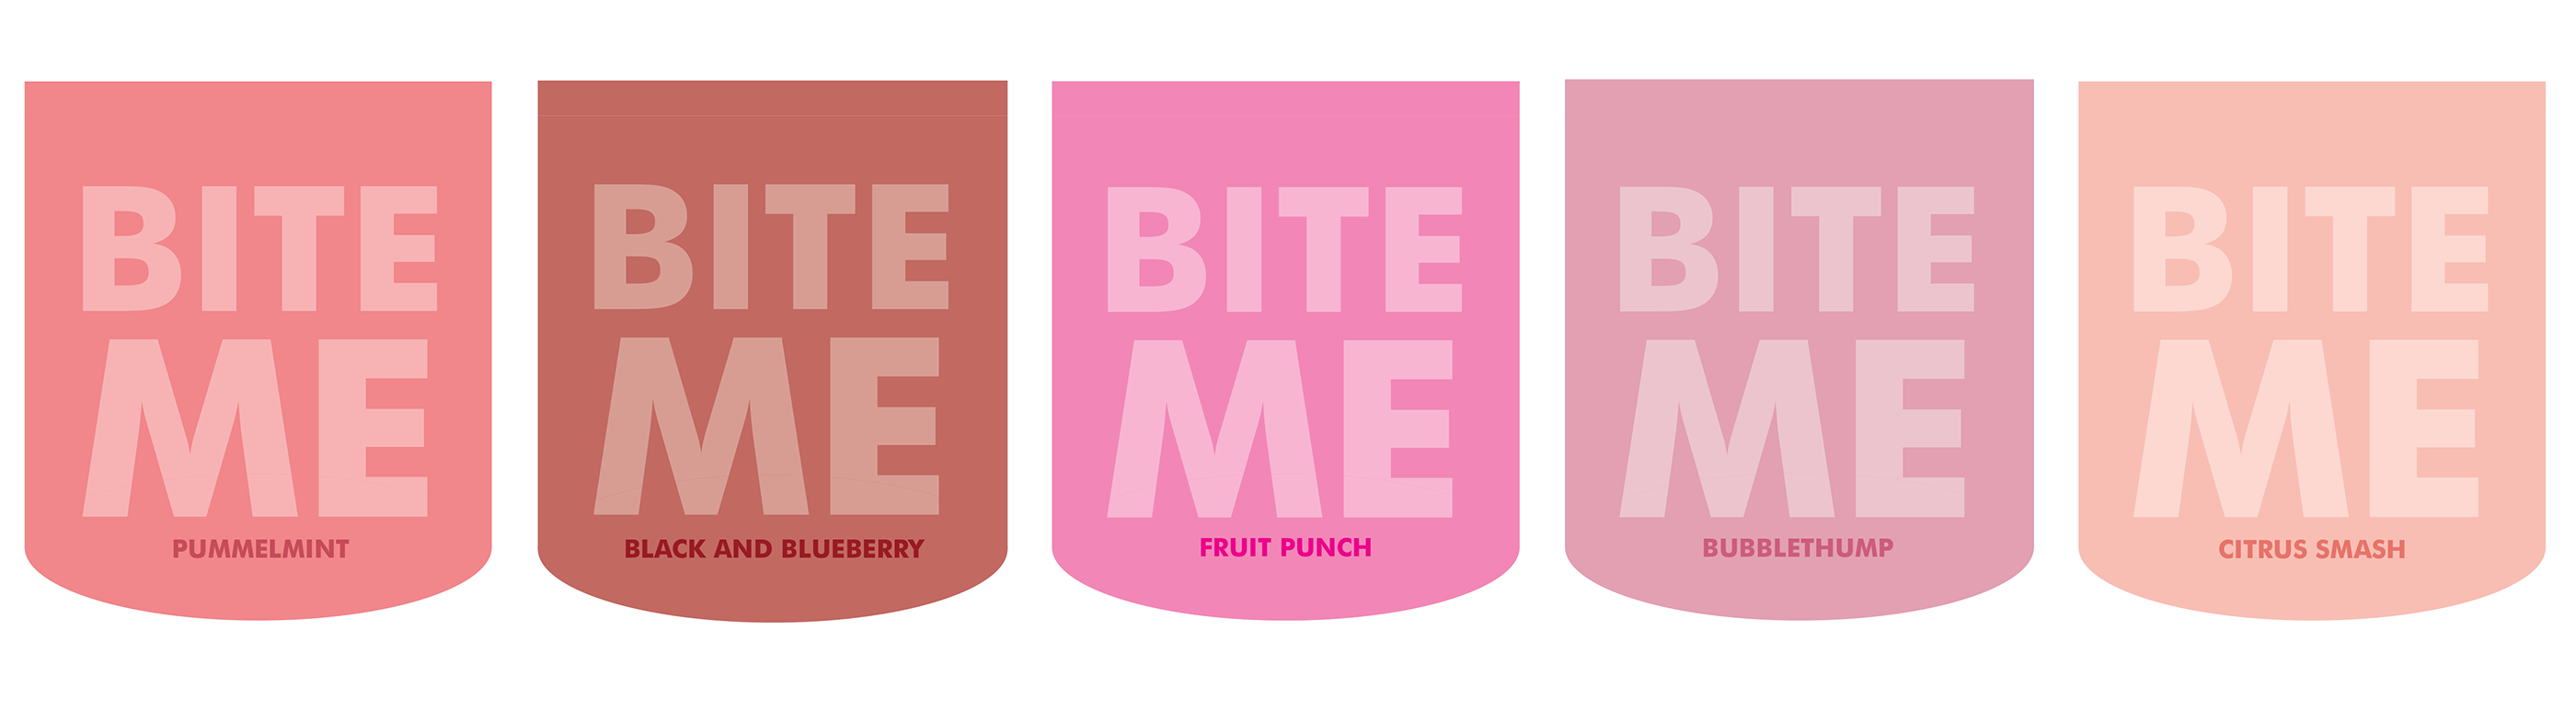 Перевести bites. Bite me. Bite me карточки. Bite реклама. Bite me Fruit Punch.